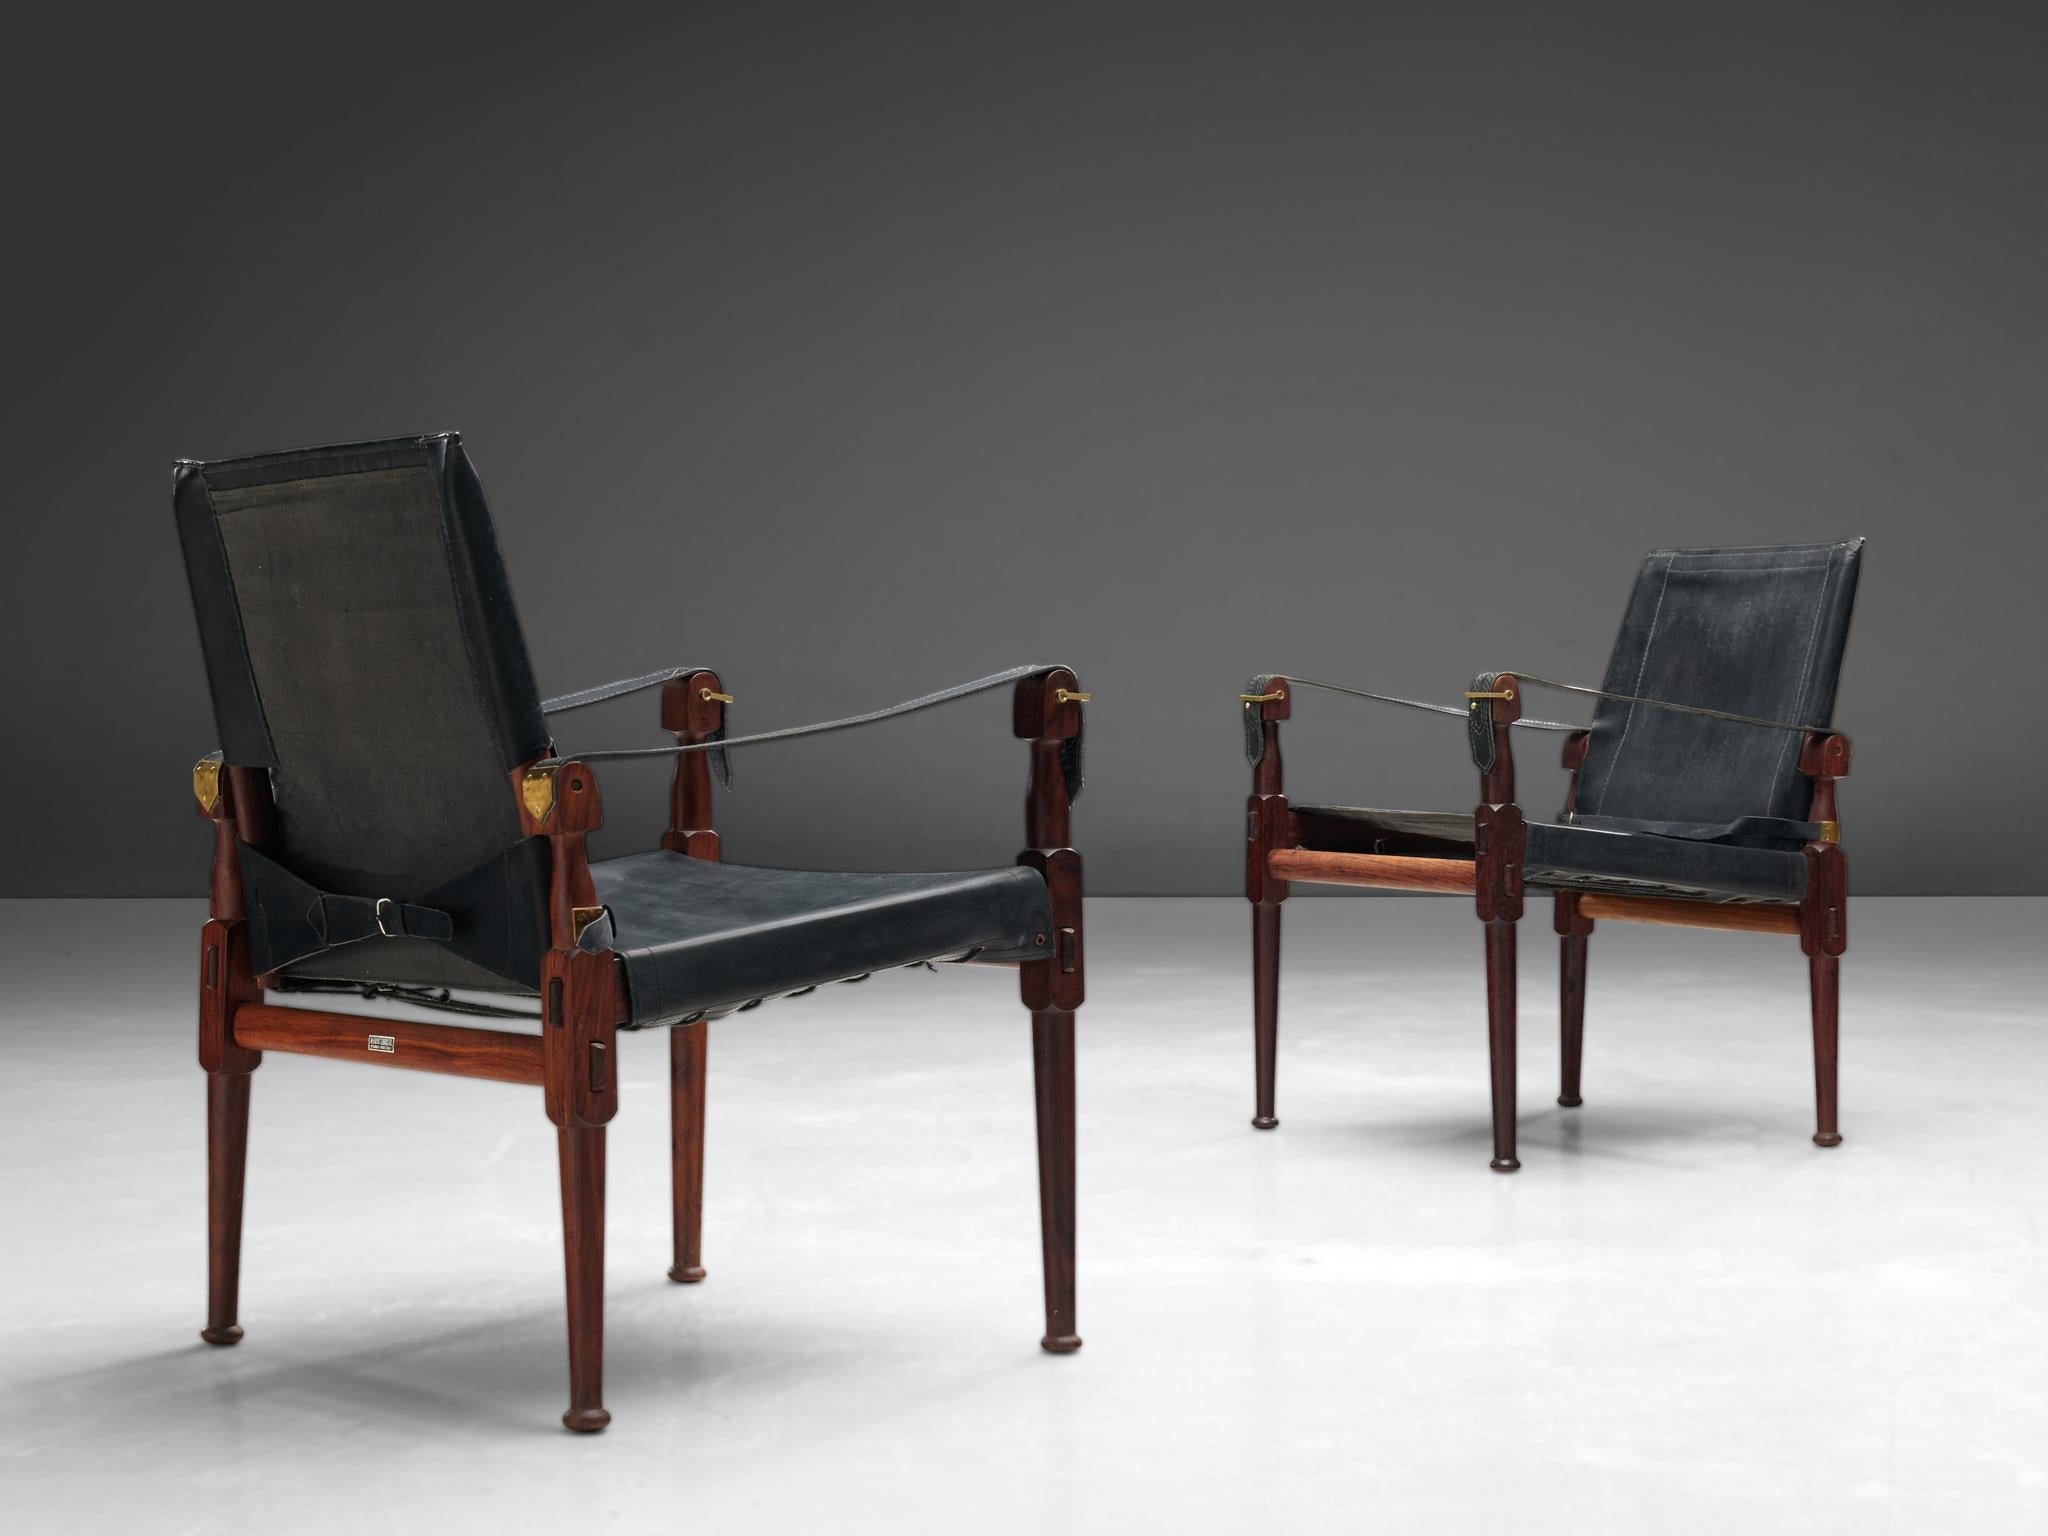 Wunderschöne 'Safari'-Sessel, Holz, schwarzes Leder und Messing, Pakistan, 1970er Jahre.

Dieser Sessel 'Safari' zeigt sehr elegante und gut durchdachte Linien in Kombination mit sorgfältig gearbeiteten Holzverbindungen. Das schwarze Leder mit